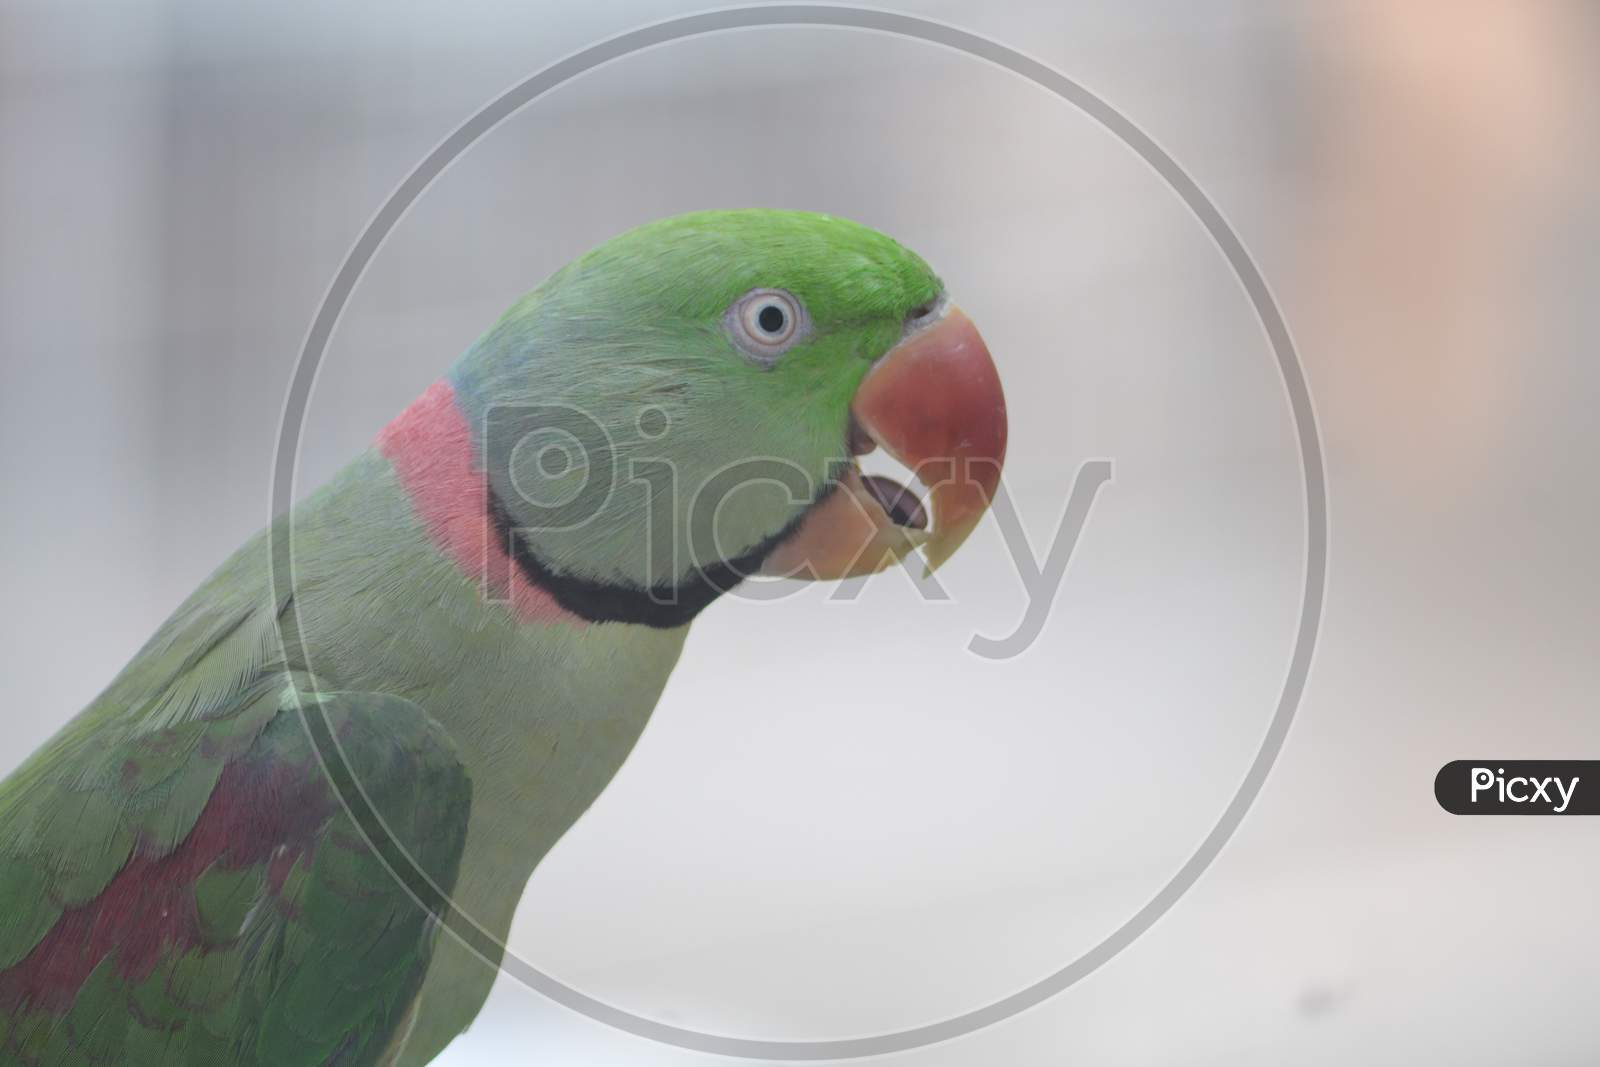 Portrait of parrot